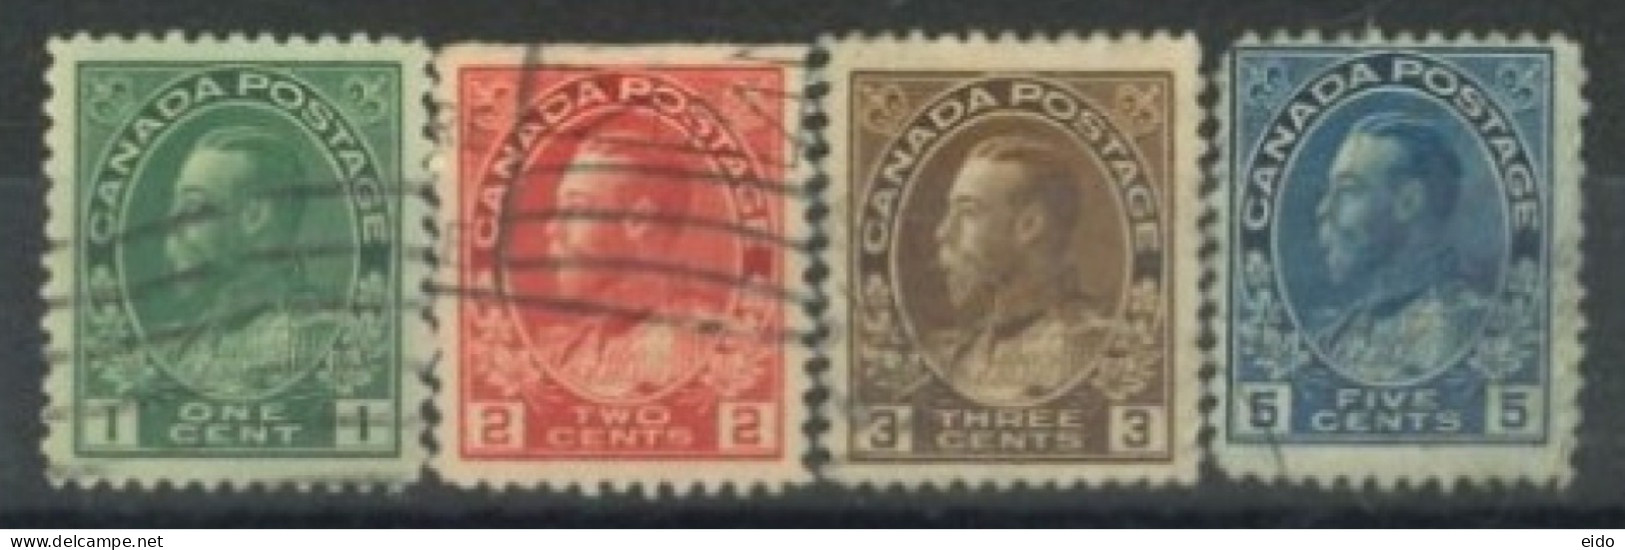 CANADA - 1912, KING GEORGE V STAMPS SET OF 4, USED. - Oblitérés